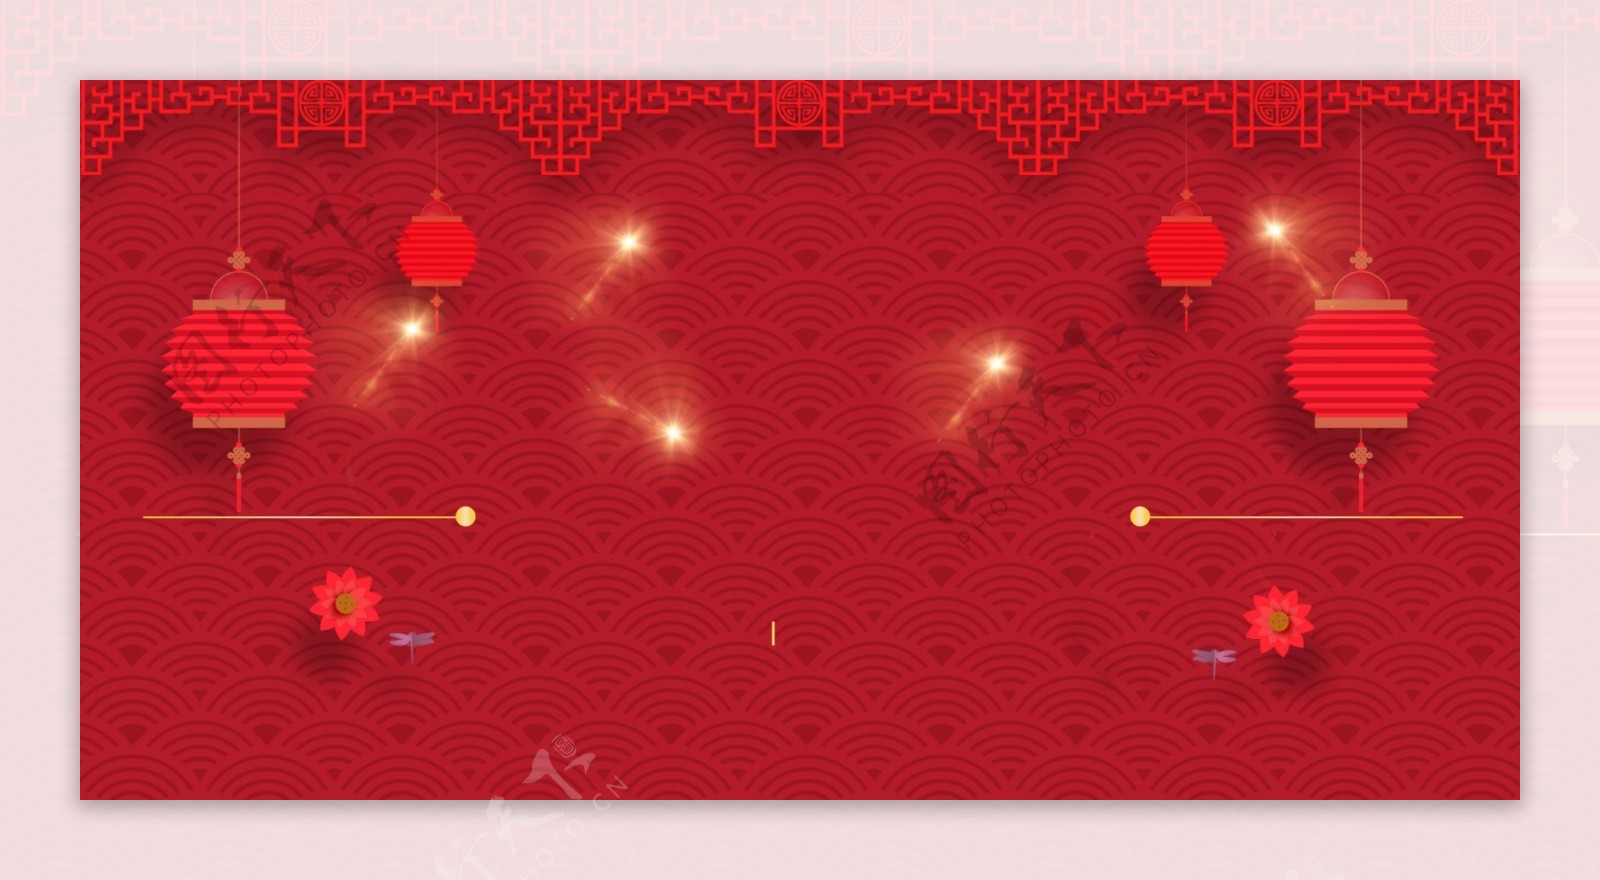 新春欢乐红色灯笼广告背景